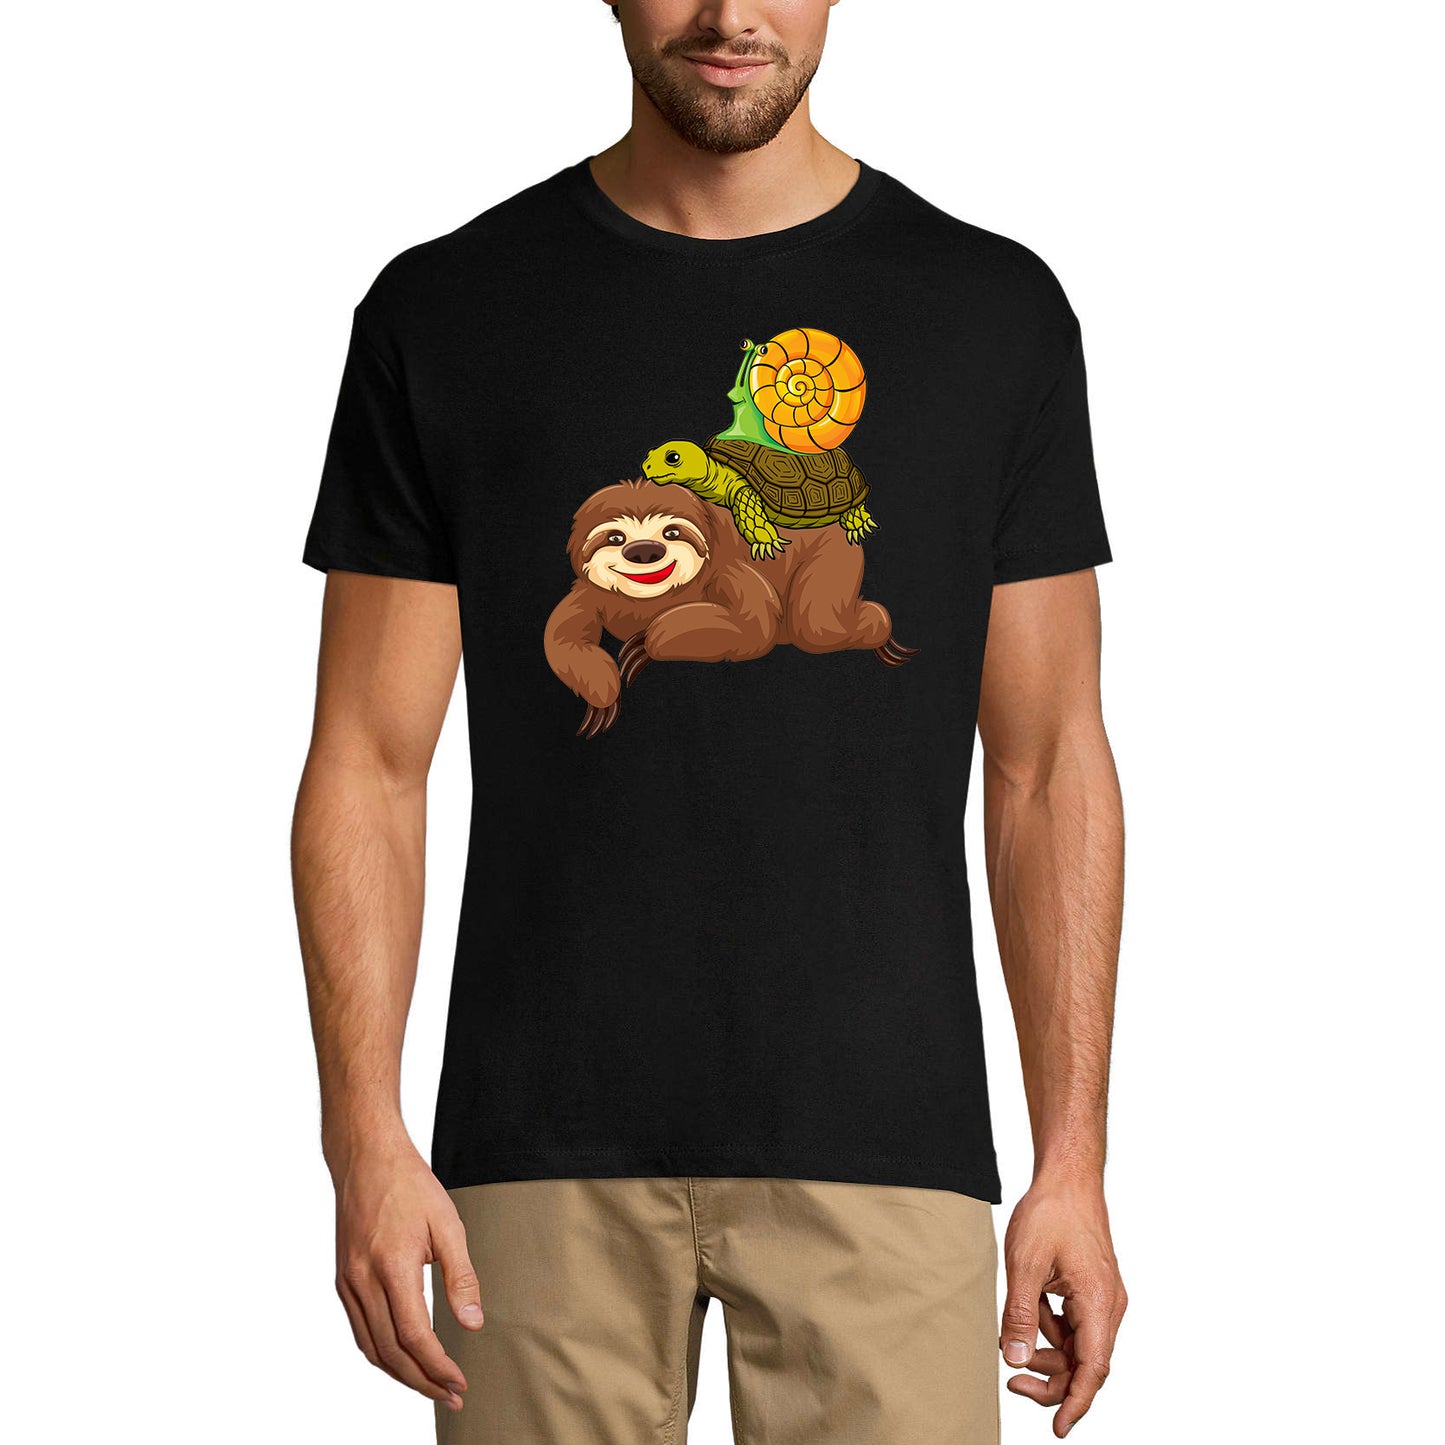 ULTRABASIC Men's Novelty T-Shirt Sloth Turtle and Snail - Funny Runner Tee Shirt